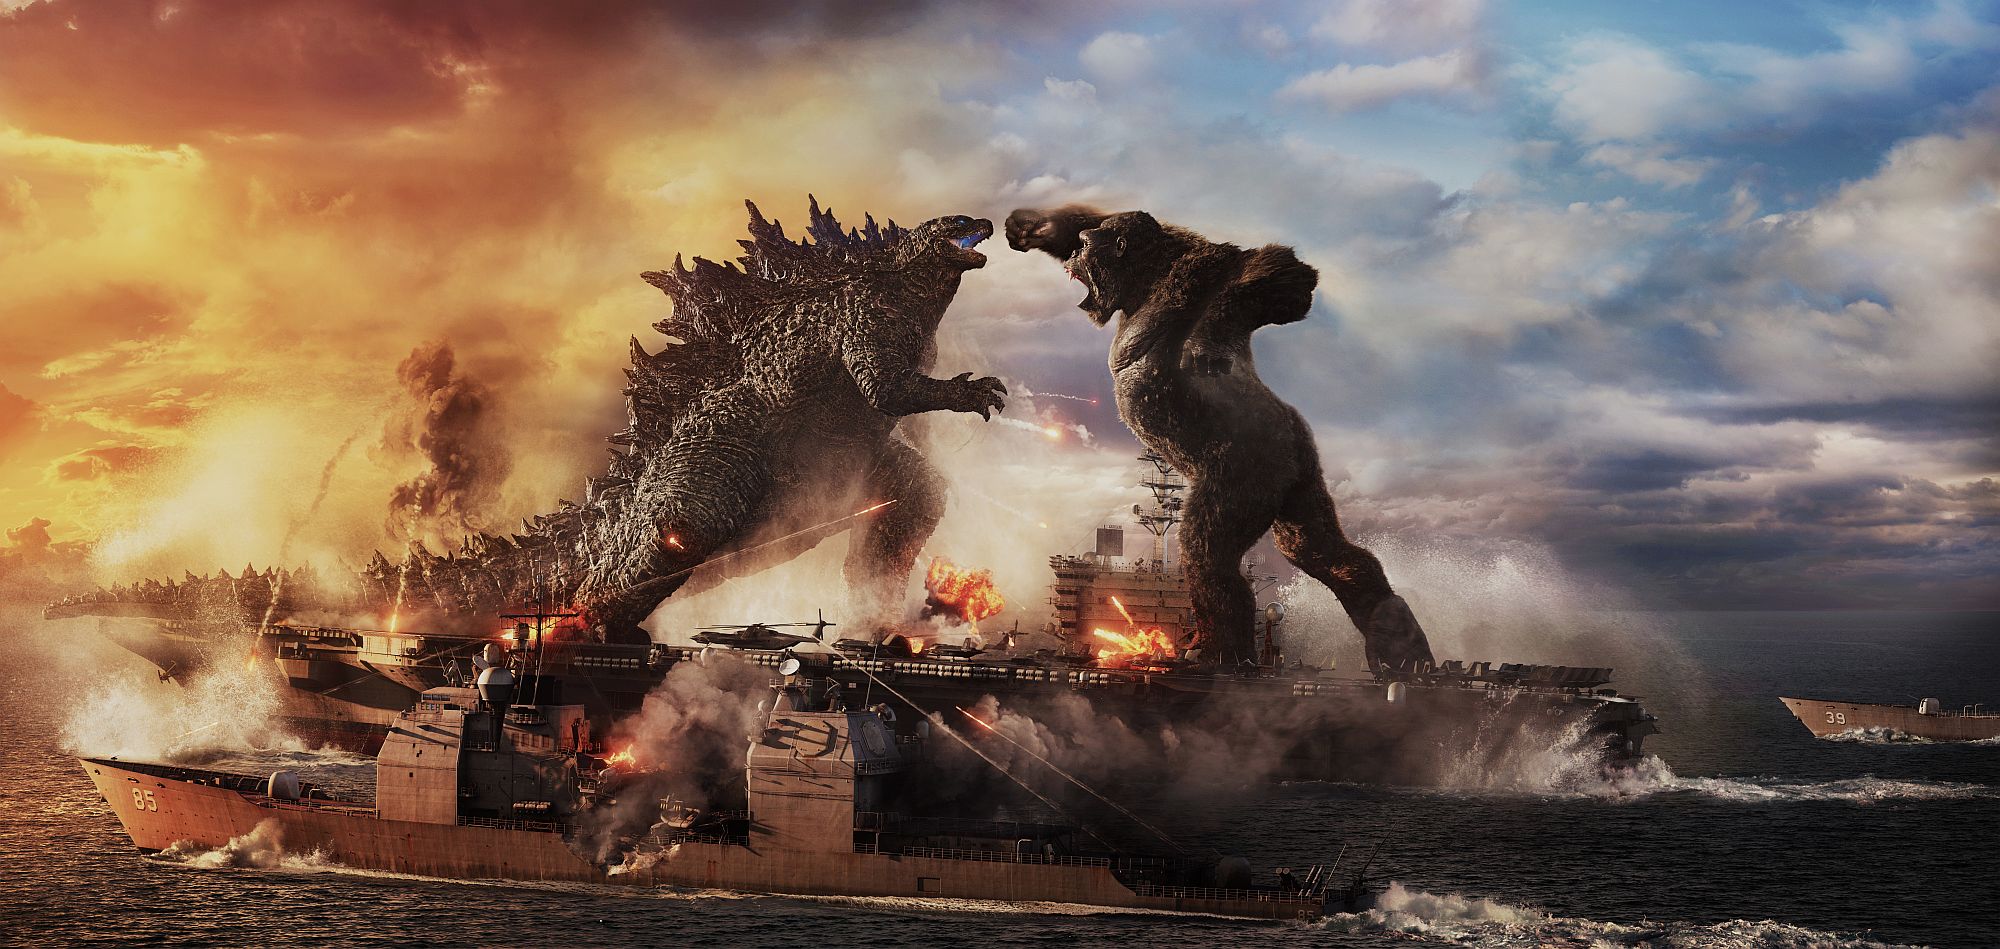 Godzilla vs. Kong-Sequel soll dieses Jahr gedreht werden